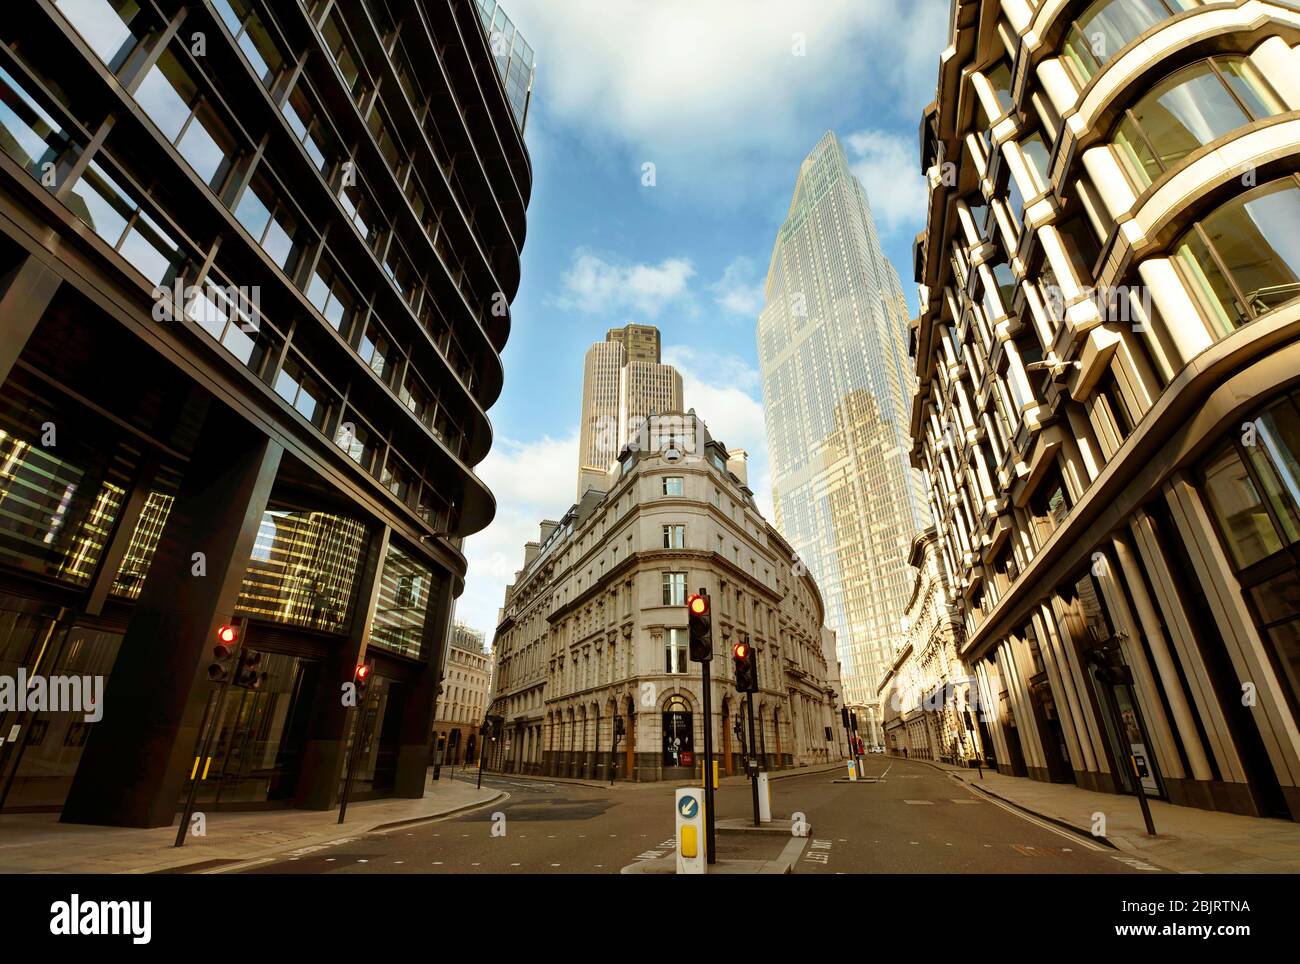 Die leere City of London; Threadneedle Street und Old Broad St. Weitwinkel-Blick auf die Architektur am 7. Tag der Sperrung. London, Großbritannien. März 2020 Stockfoto